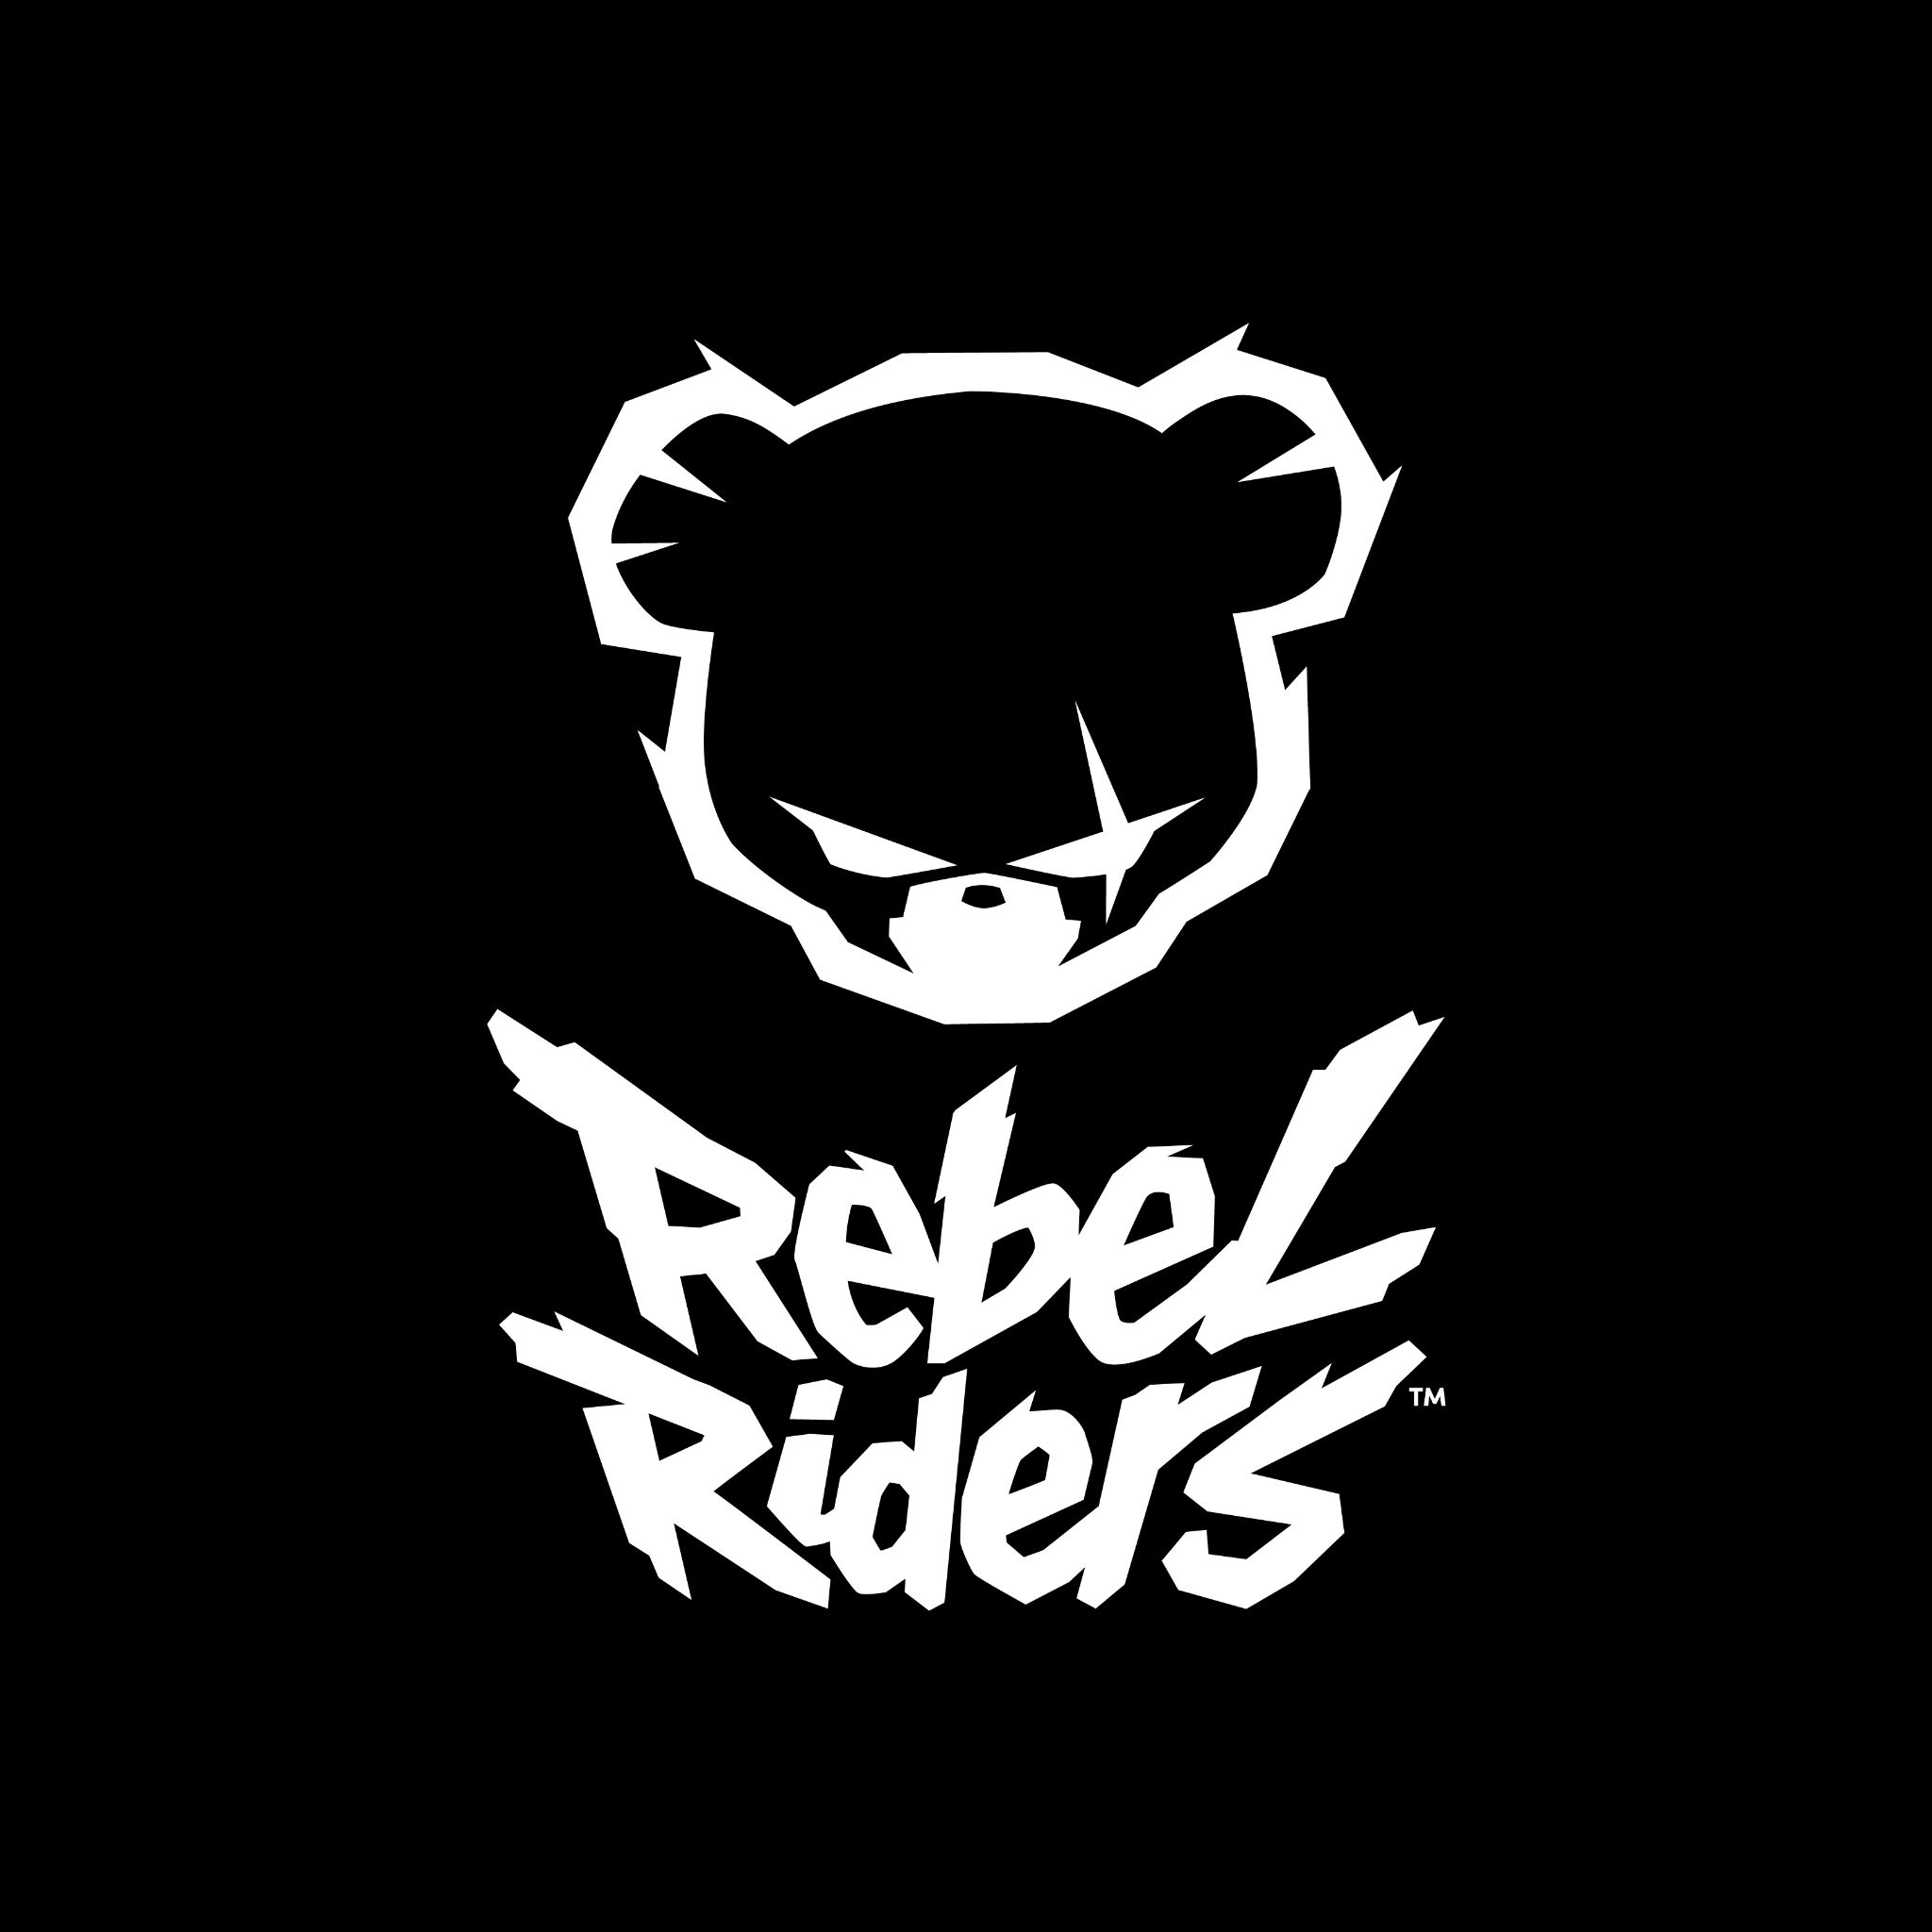 biborg-work-king-rebel-riders-white-logo